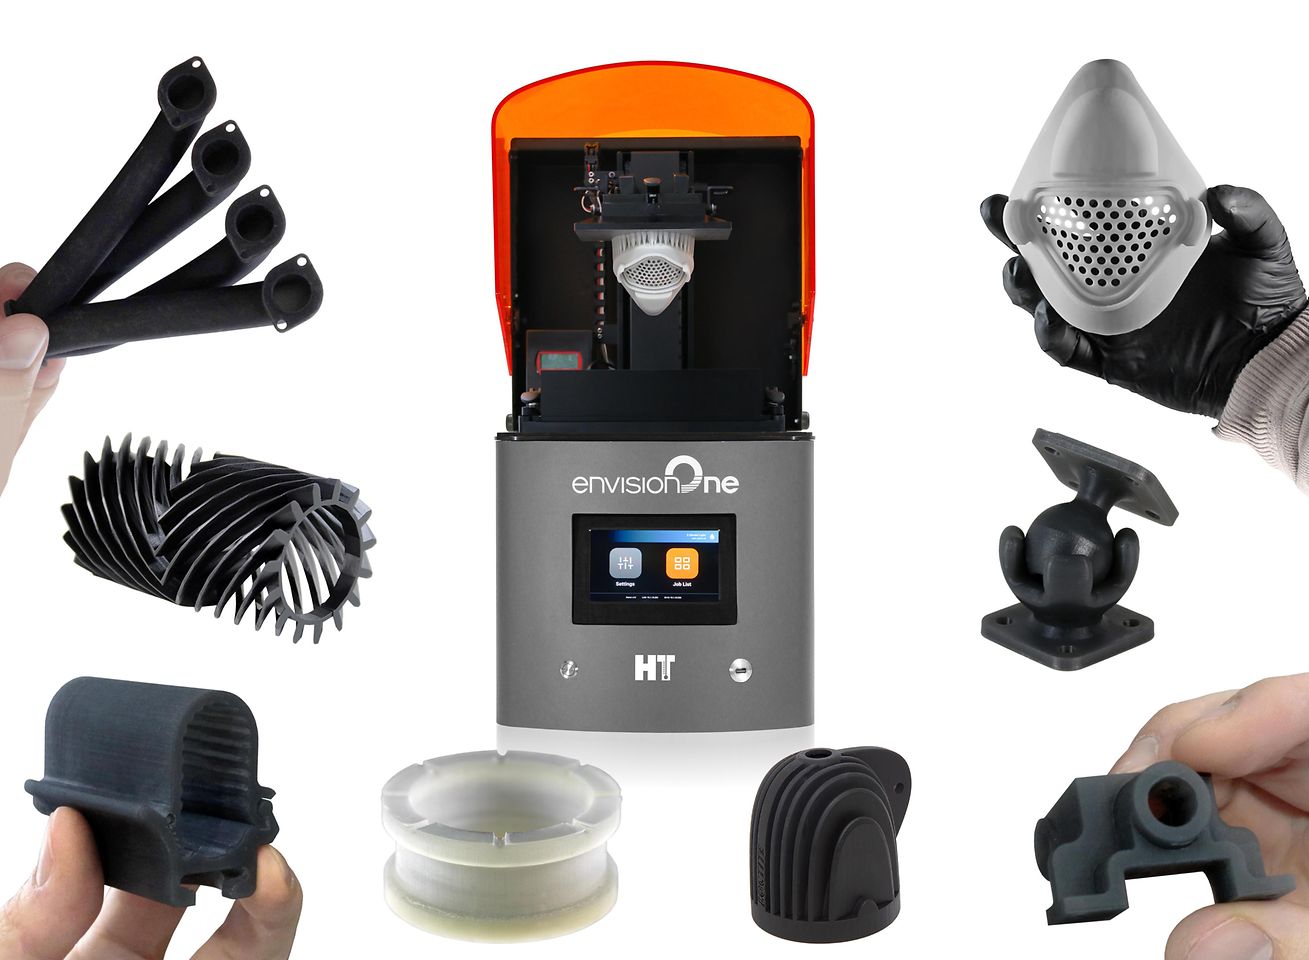  EnvisionTEC und Henkel bündeln ihre Expertisen, um den Einsatz des 3D-Drucks im Industriemaßstab weiter voranzutreiben.